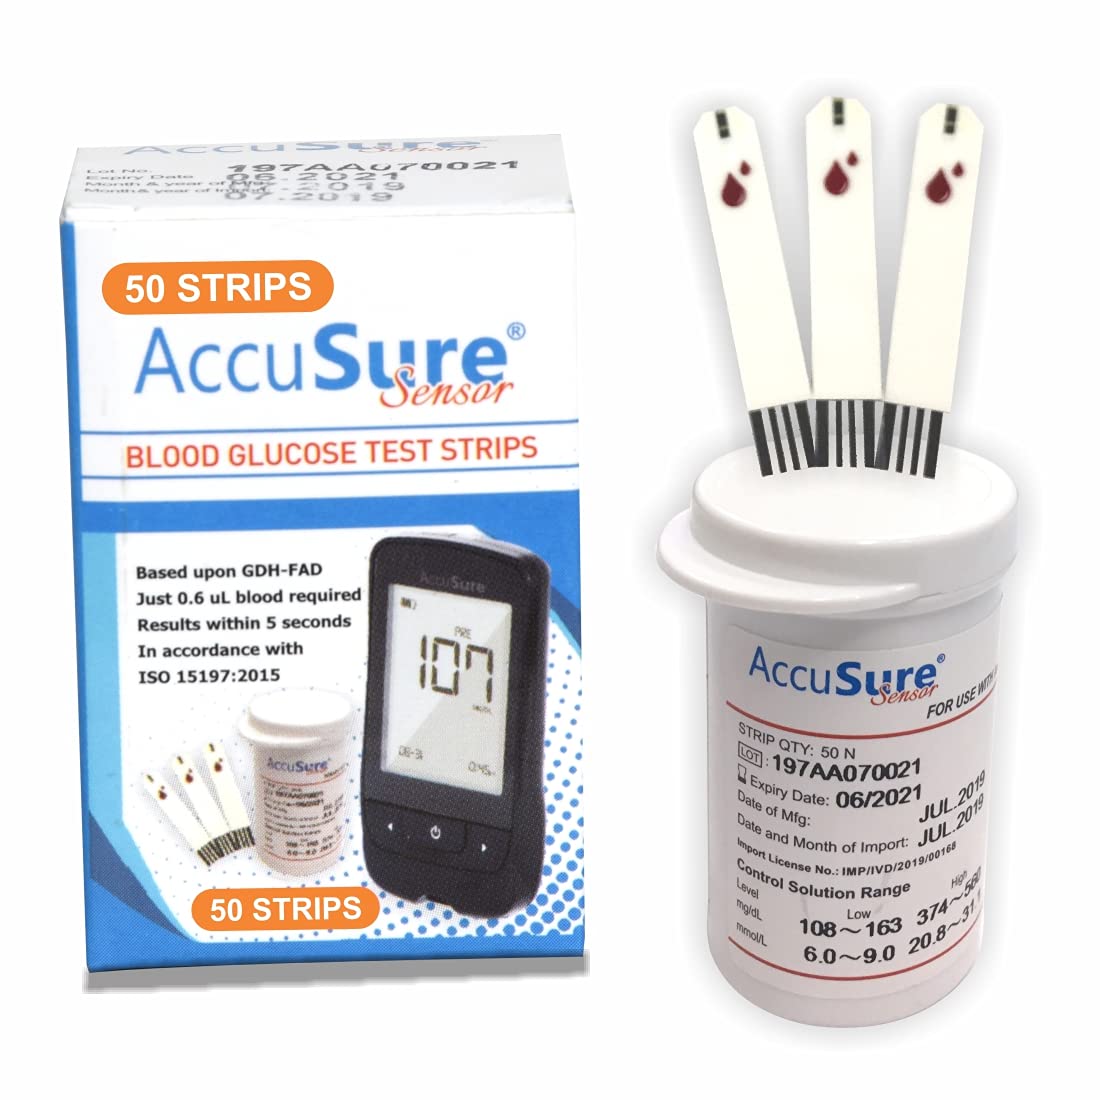 AccuSure Sensor Glucometer Test Strips